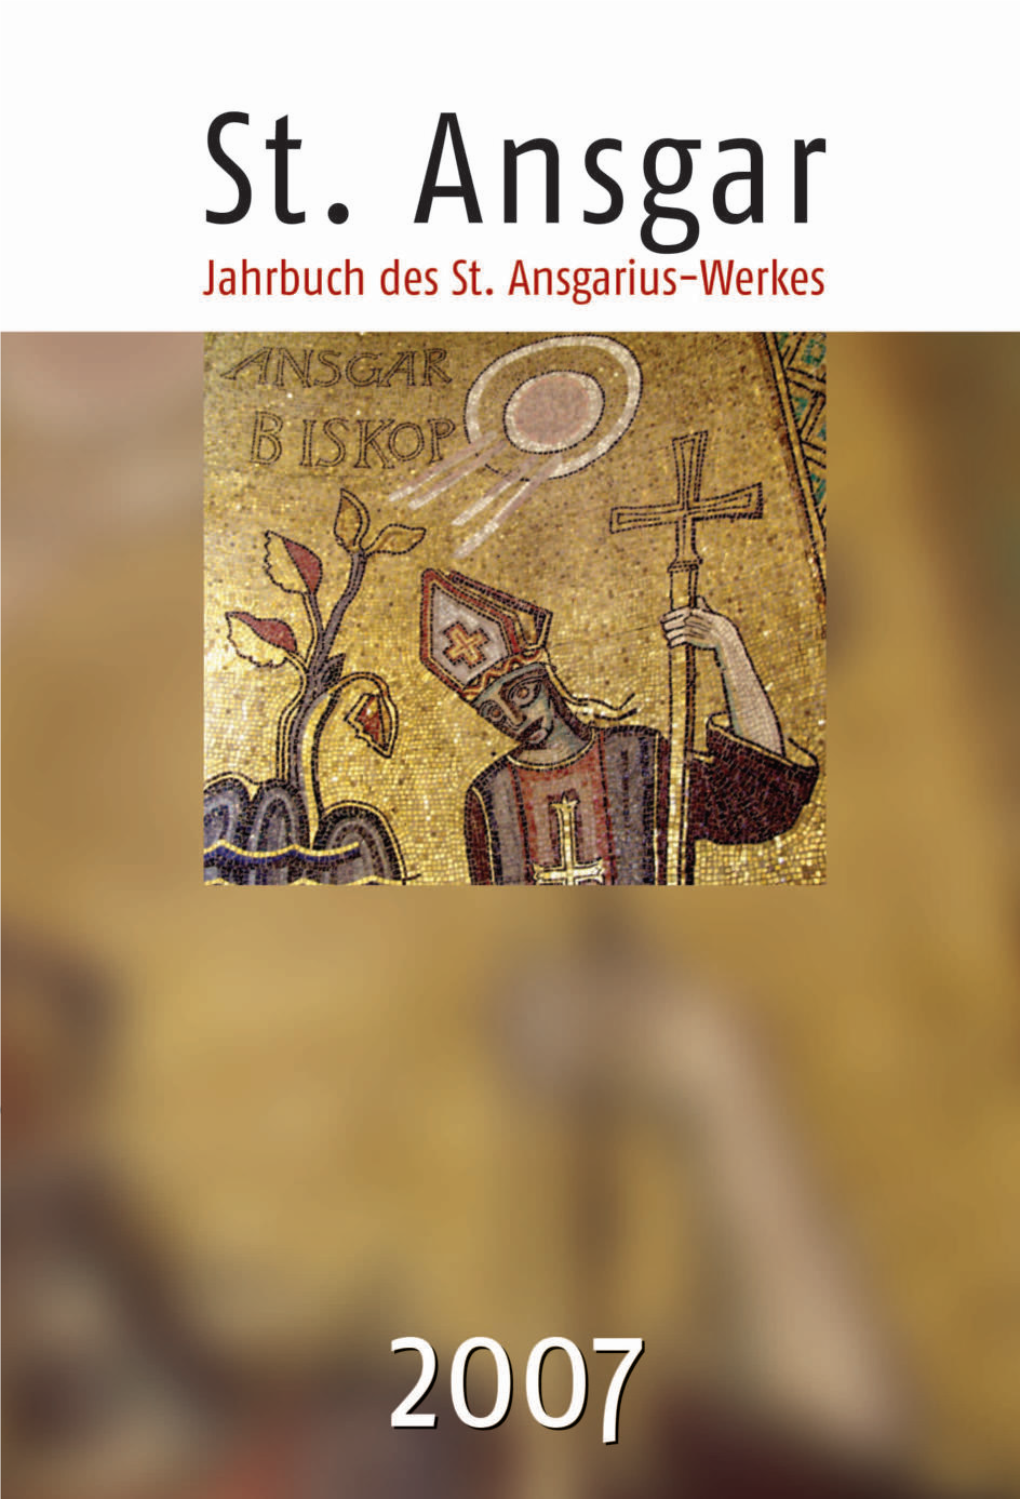 St. Ansgar-Jahrbuch 2007